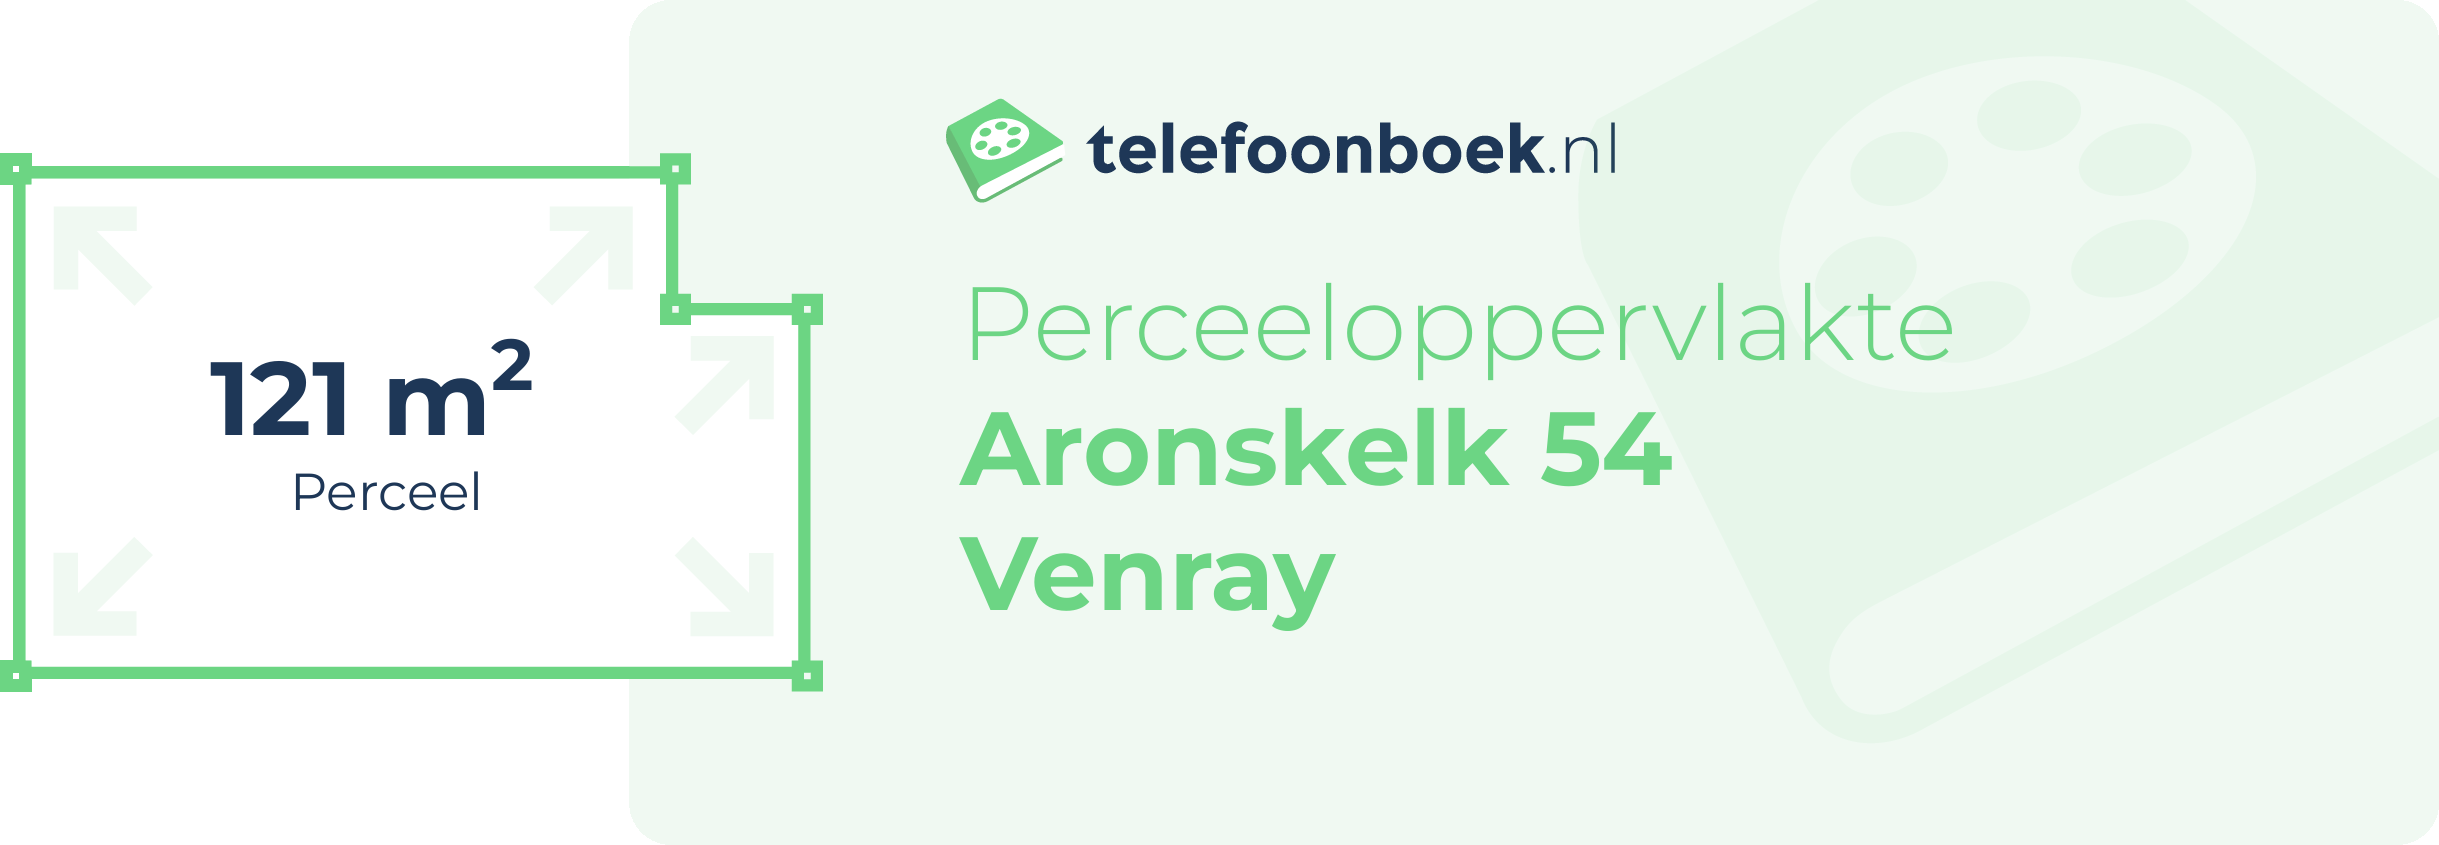 Perceeloppervlakte Aronskelk 54 Venray